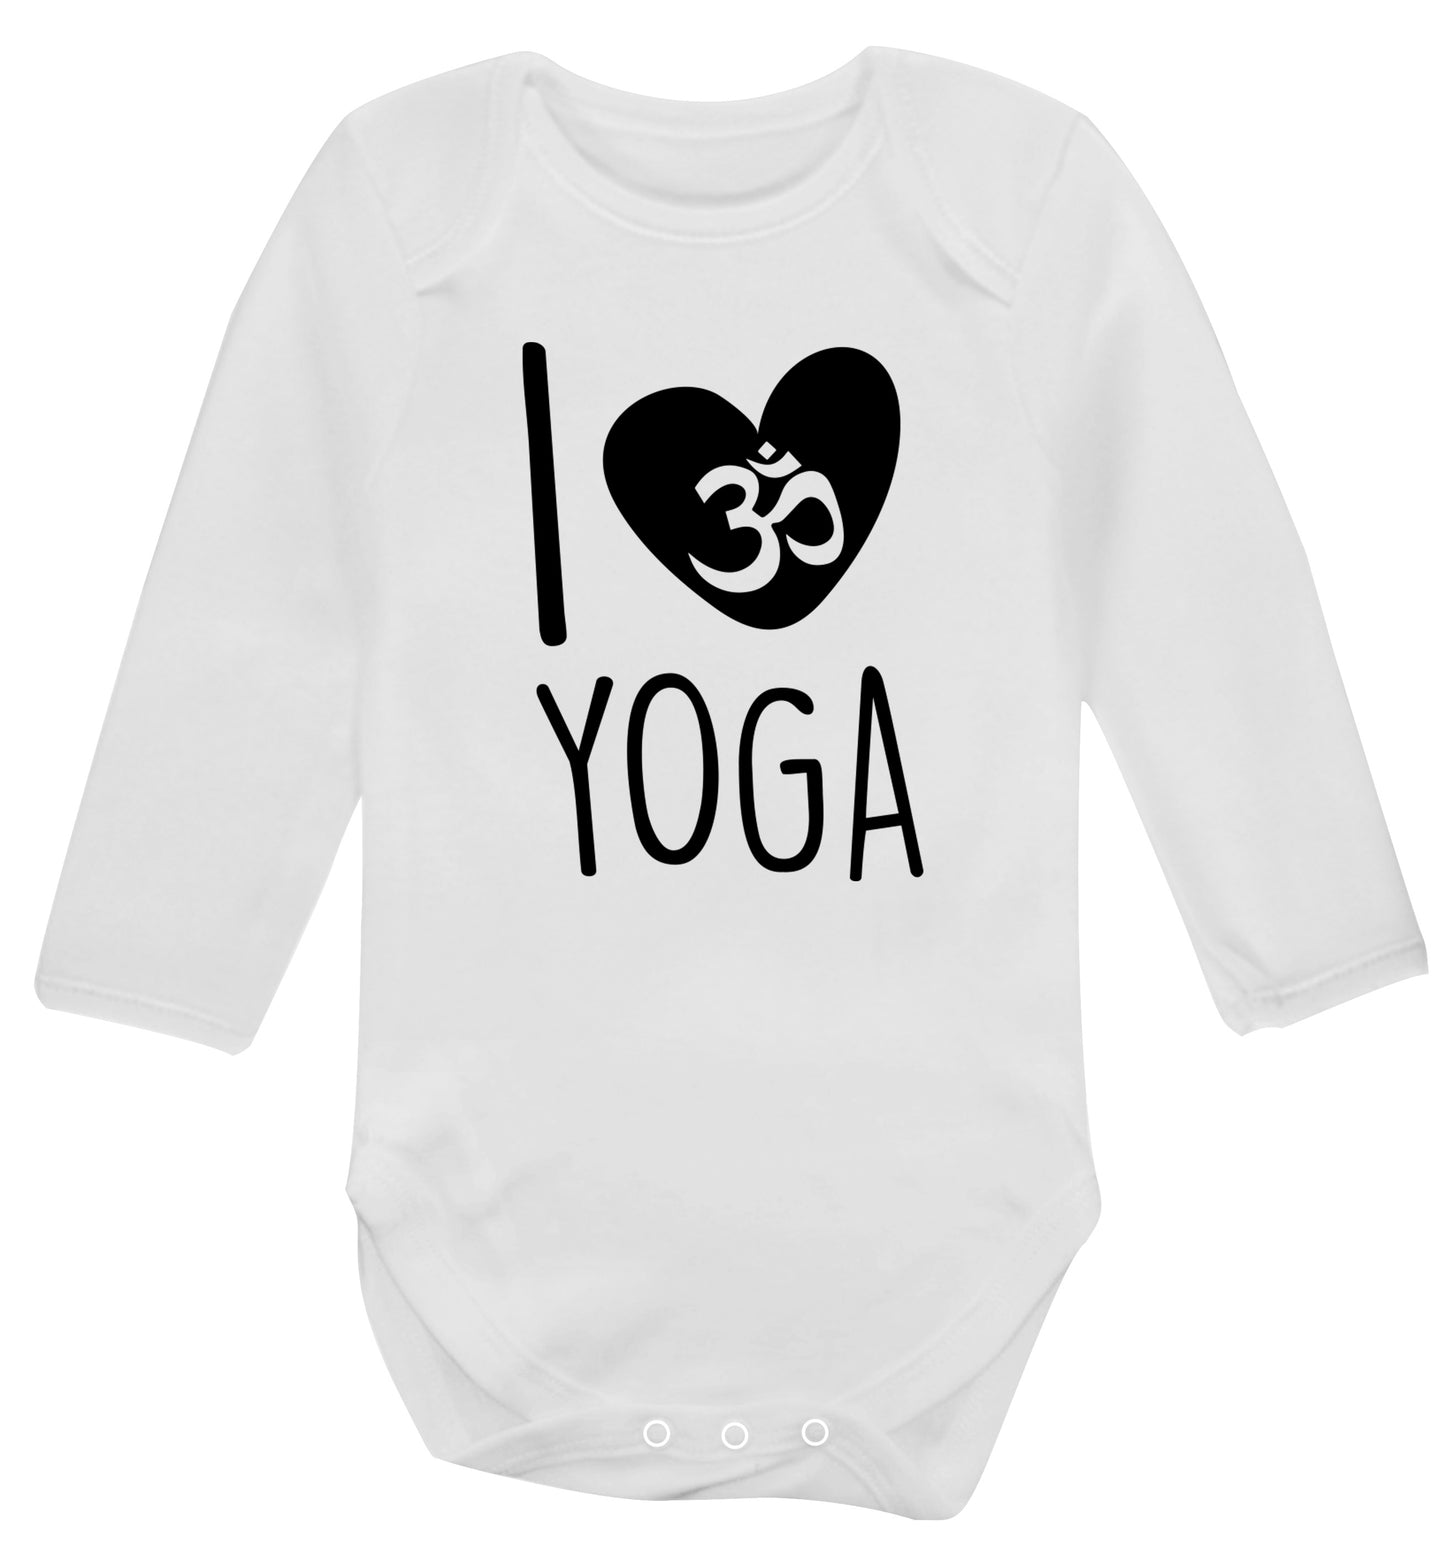 I love yoga Baby Vest long sleeved white 6-12 months